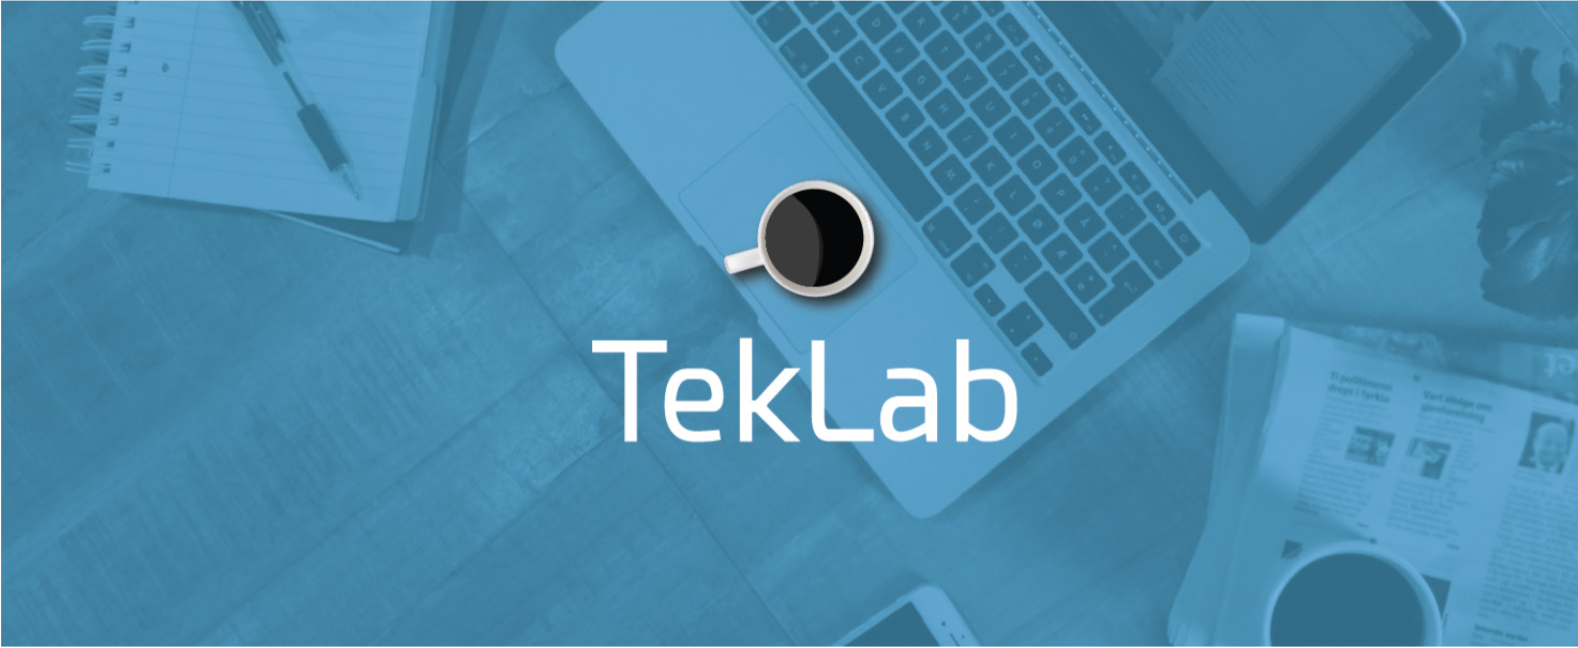 TekLab: Eit akademisk nettverk for teknologiutvikling